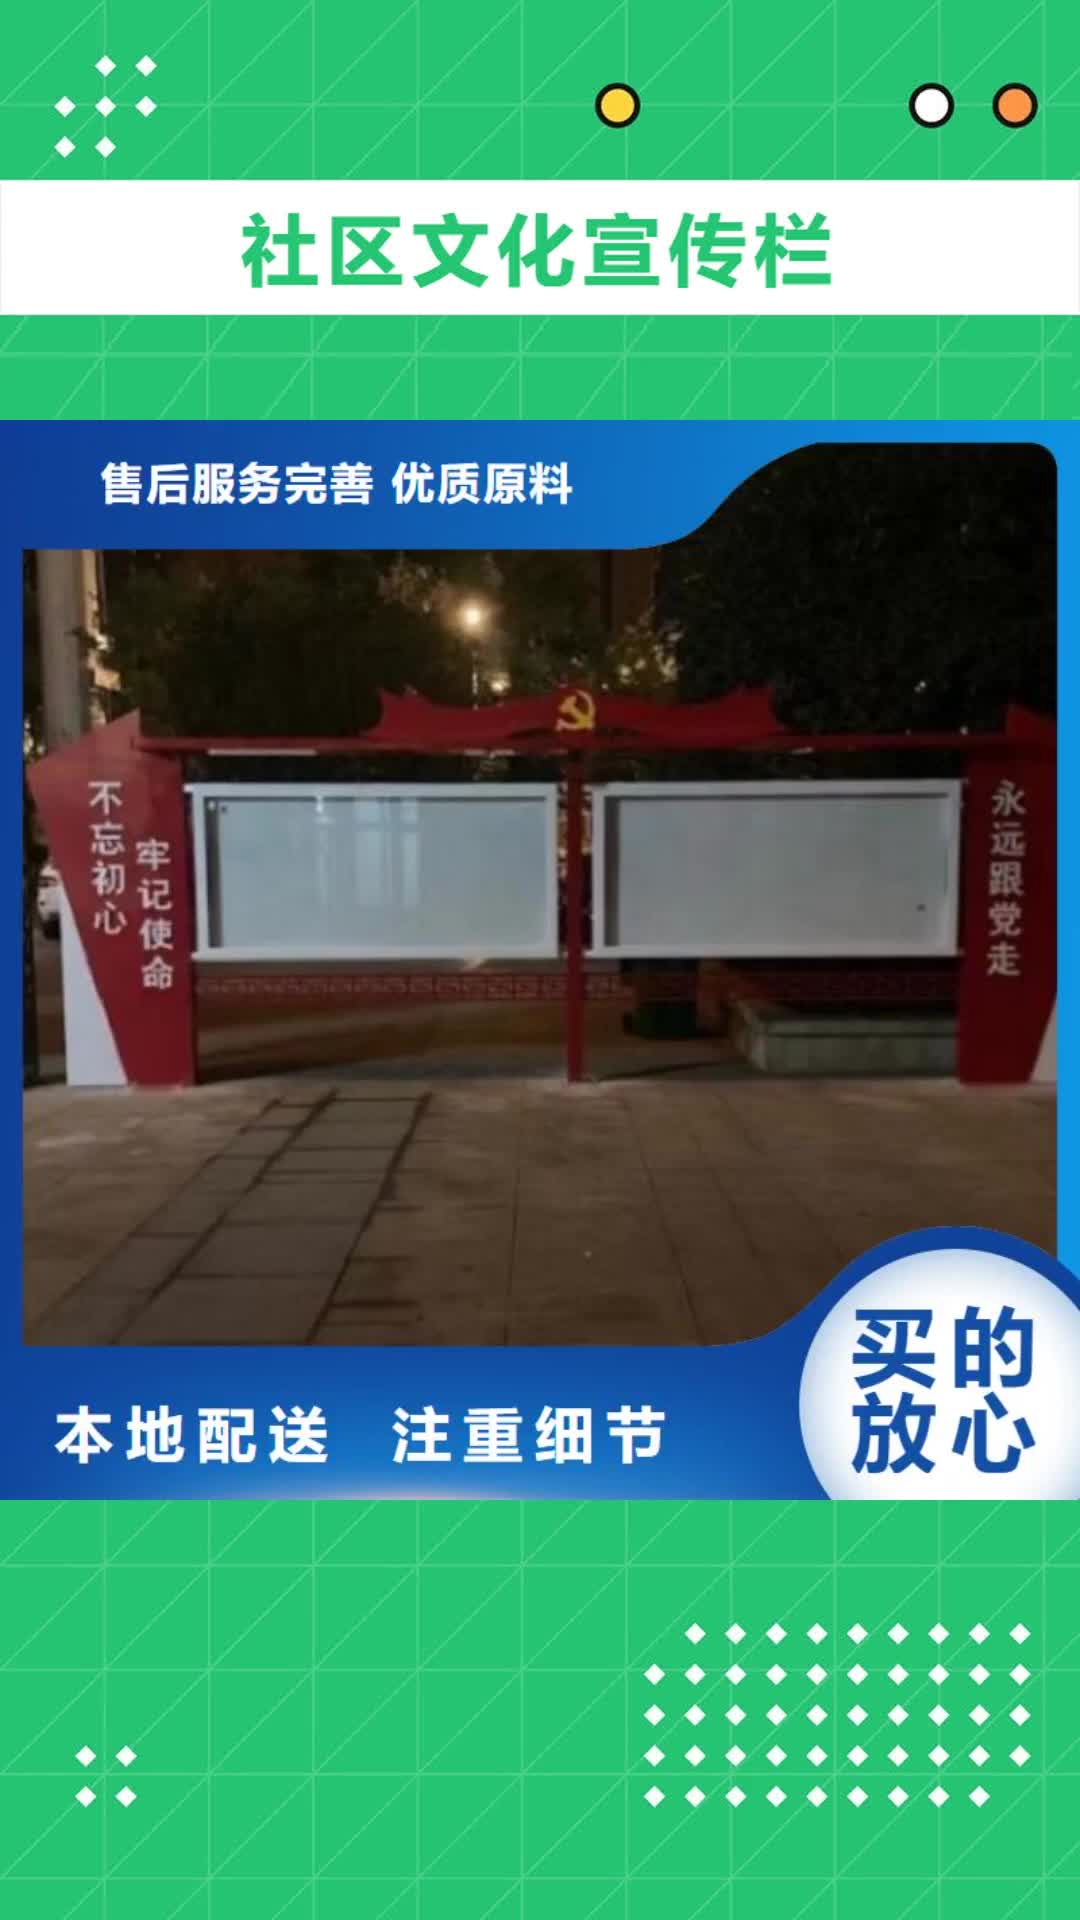 娄底【社区文化宣传栏】-不锈钢站台制作让利客户